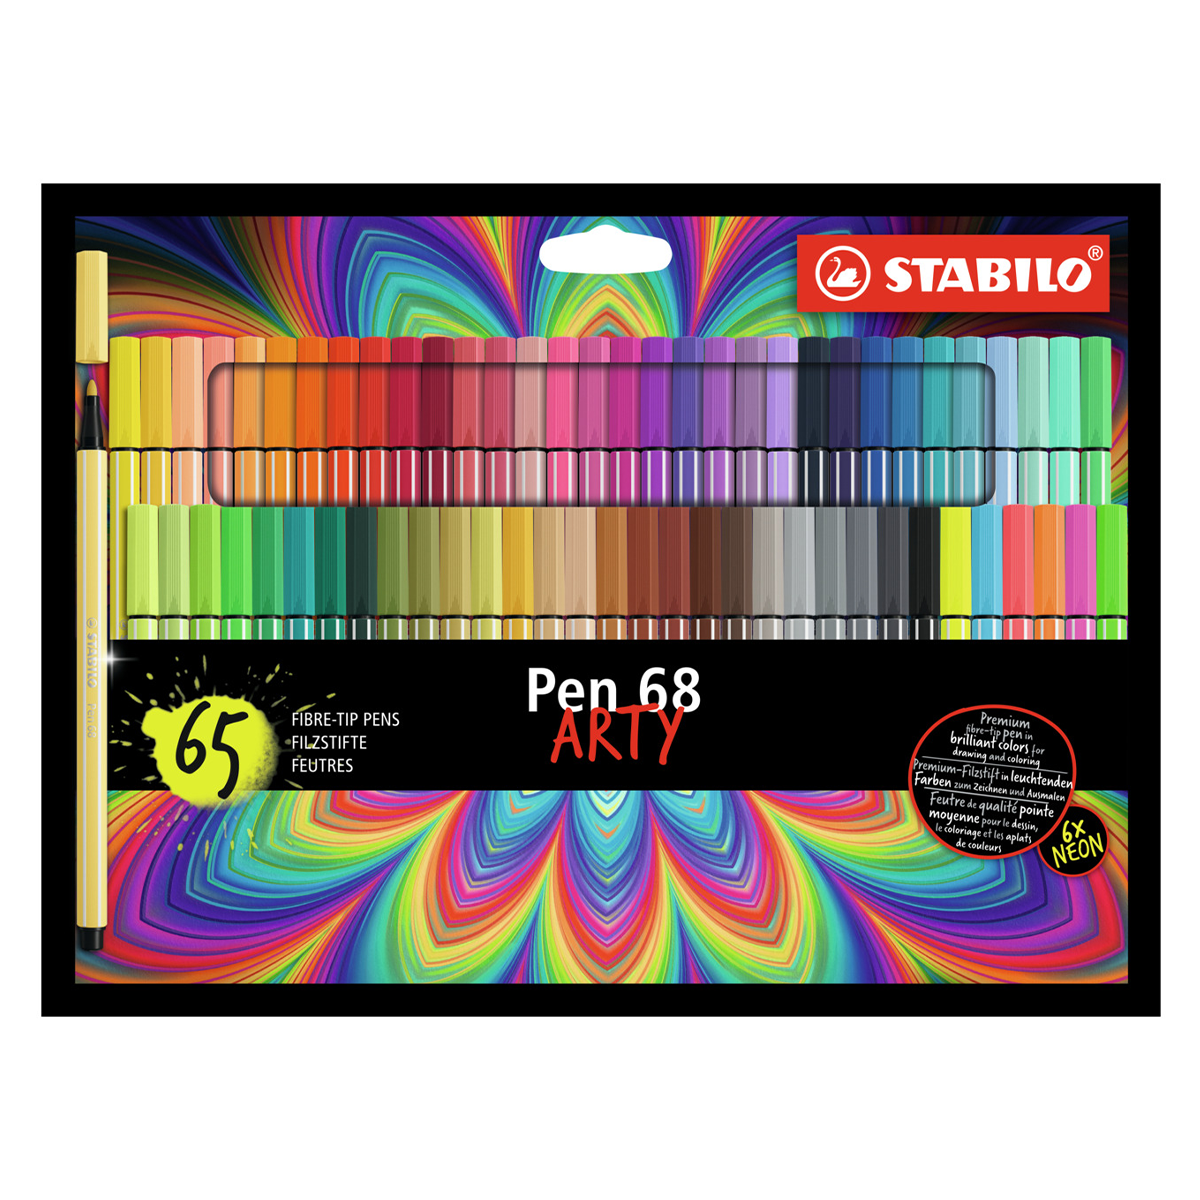 Stabilo Pen 68 Felt-tip Arty 65 pcs